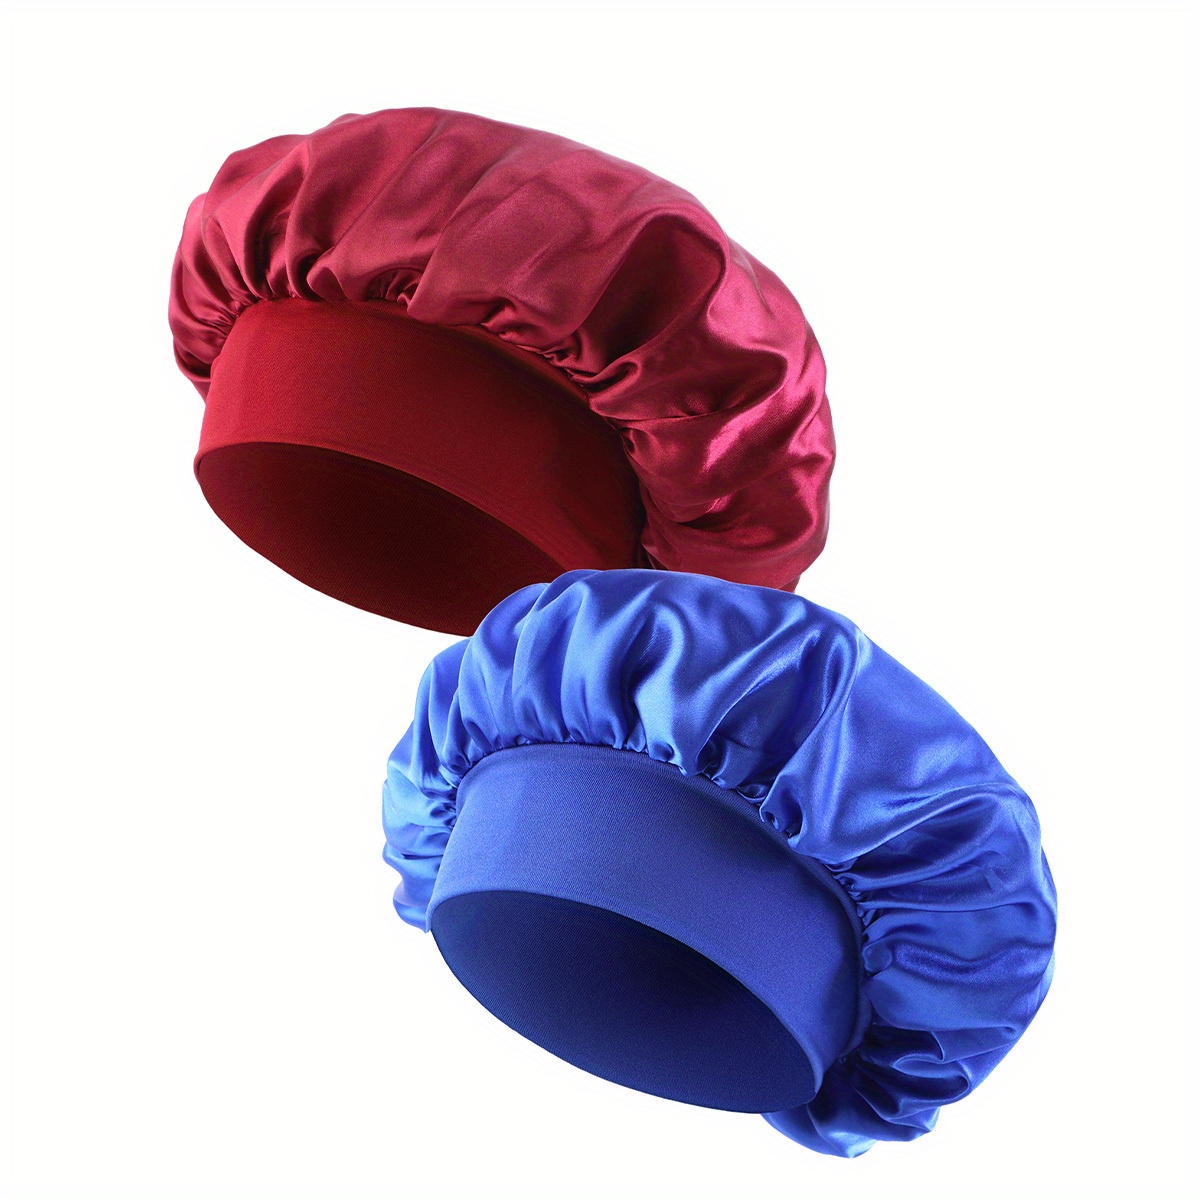 Bonnet en satin doux extensible mode doublé bonnet de sommeil chapeau  bambou couvre-chef crépus cheveux naturels casquette d'infirmière pour  femmes et hommes